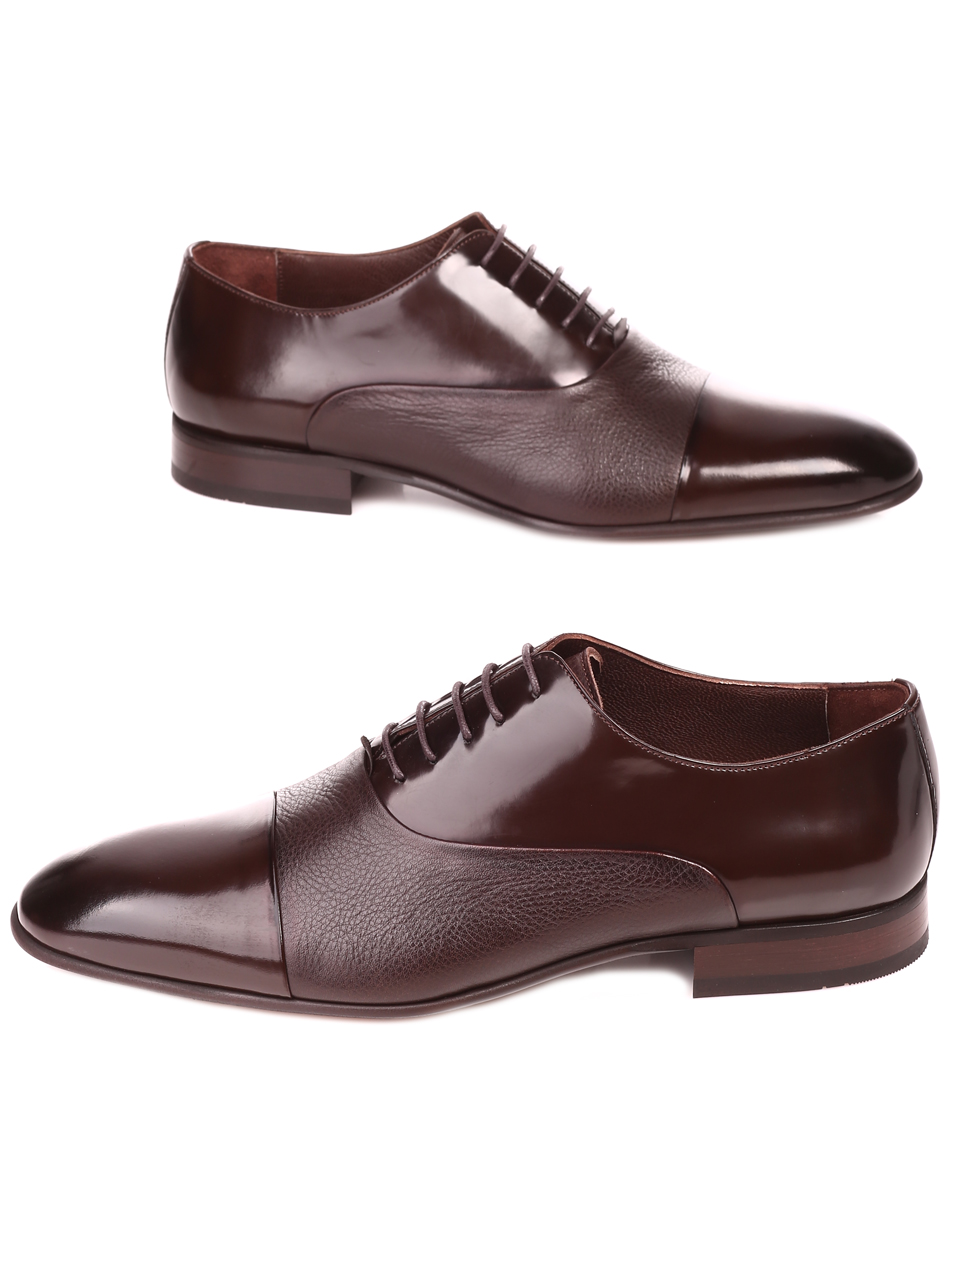 Елегантни мъжки обувки от естествен лак и естествена кожа 7AT-22286 brown